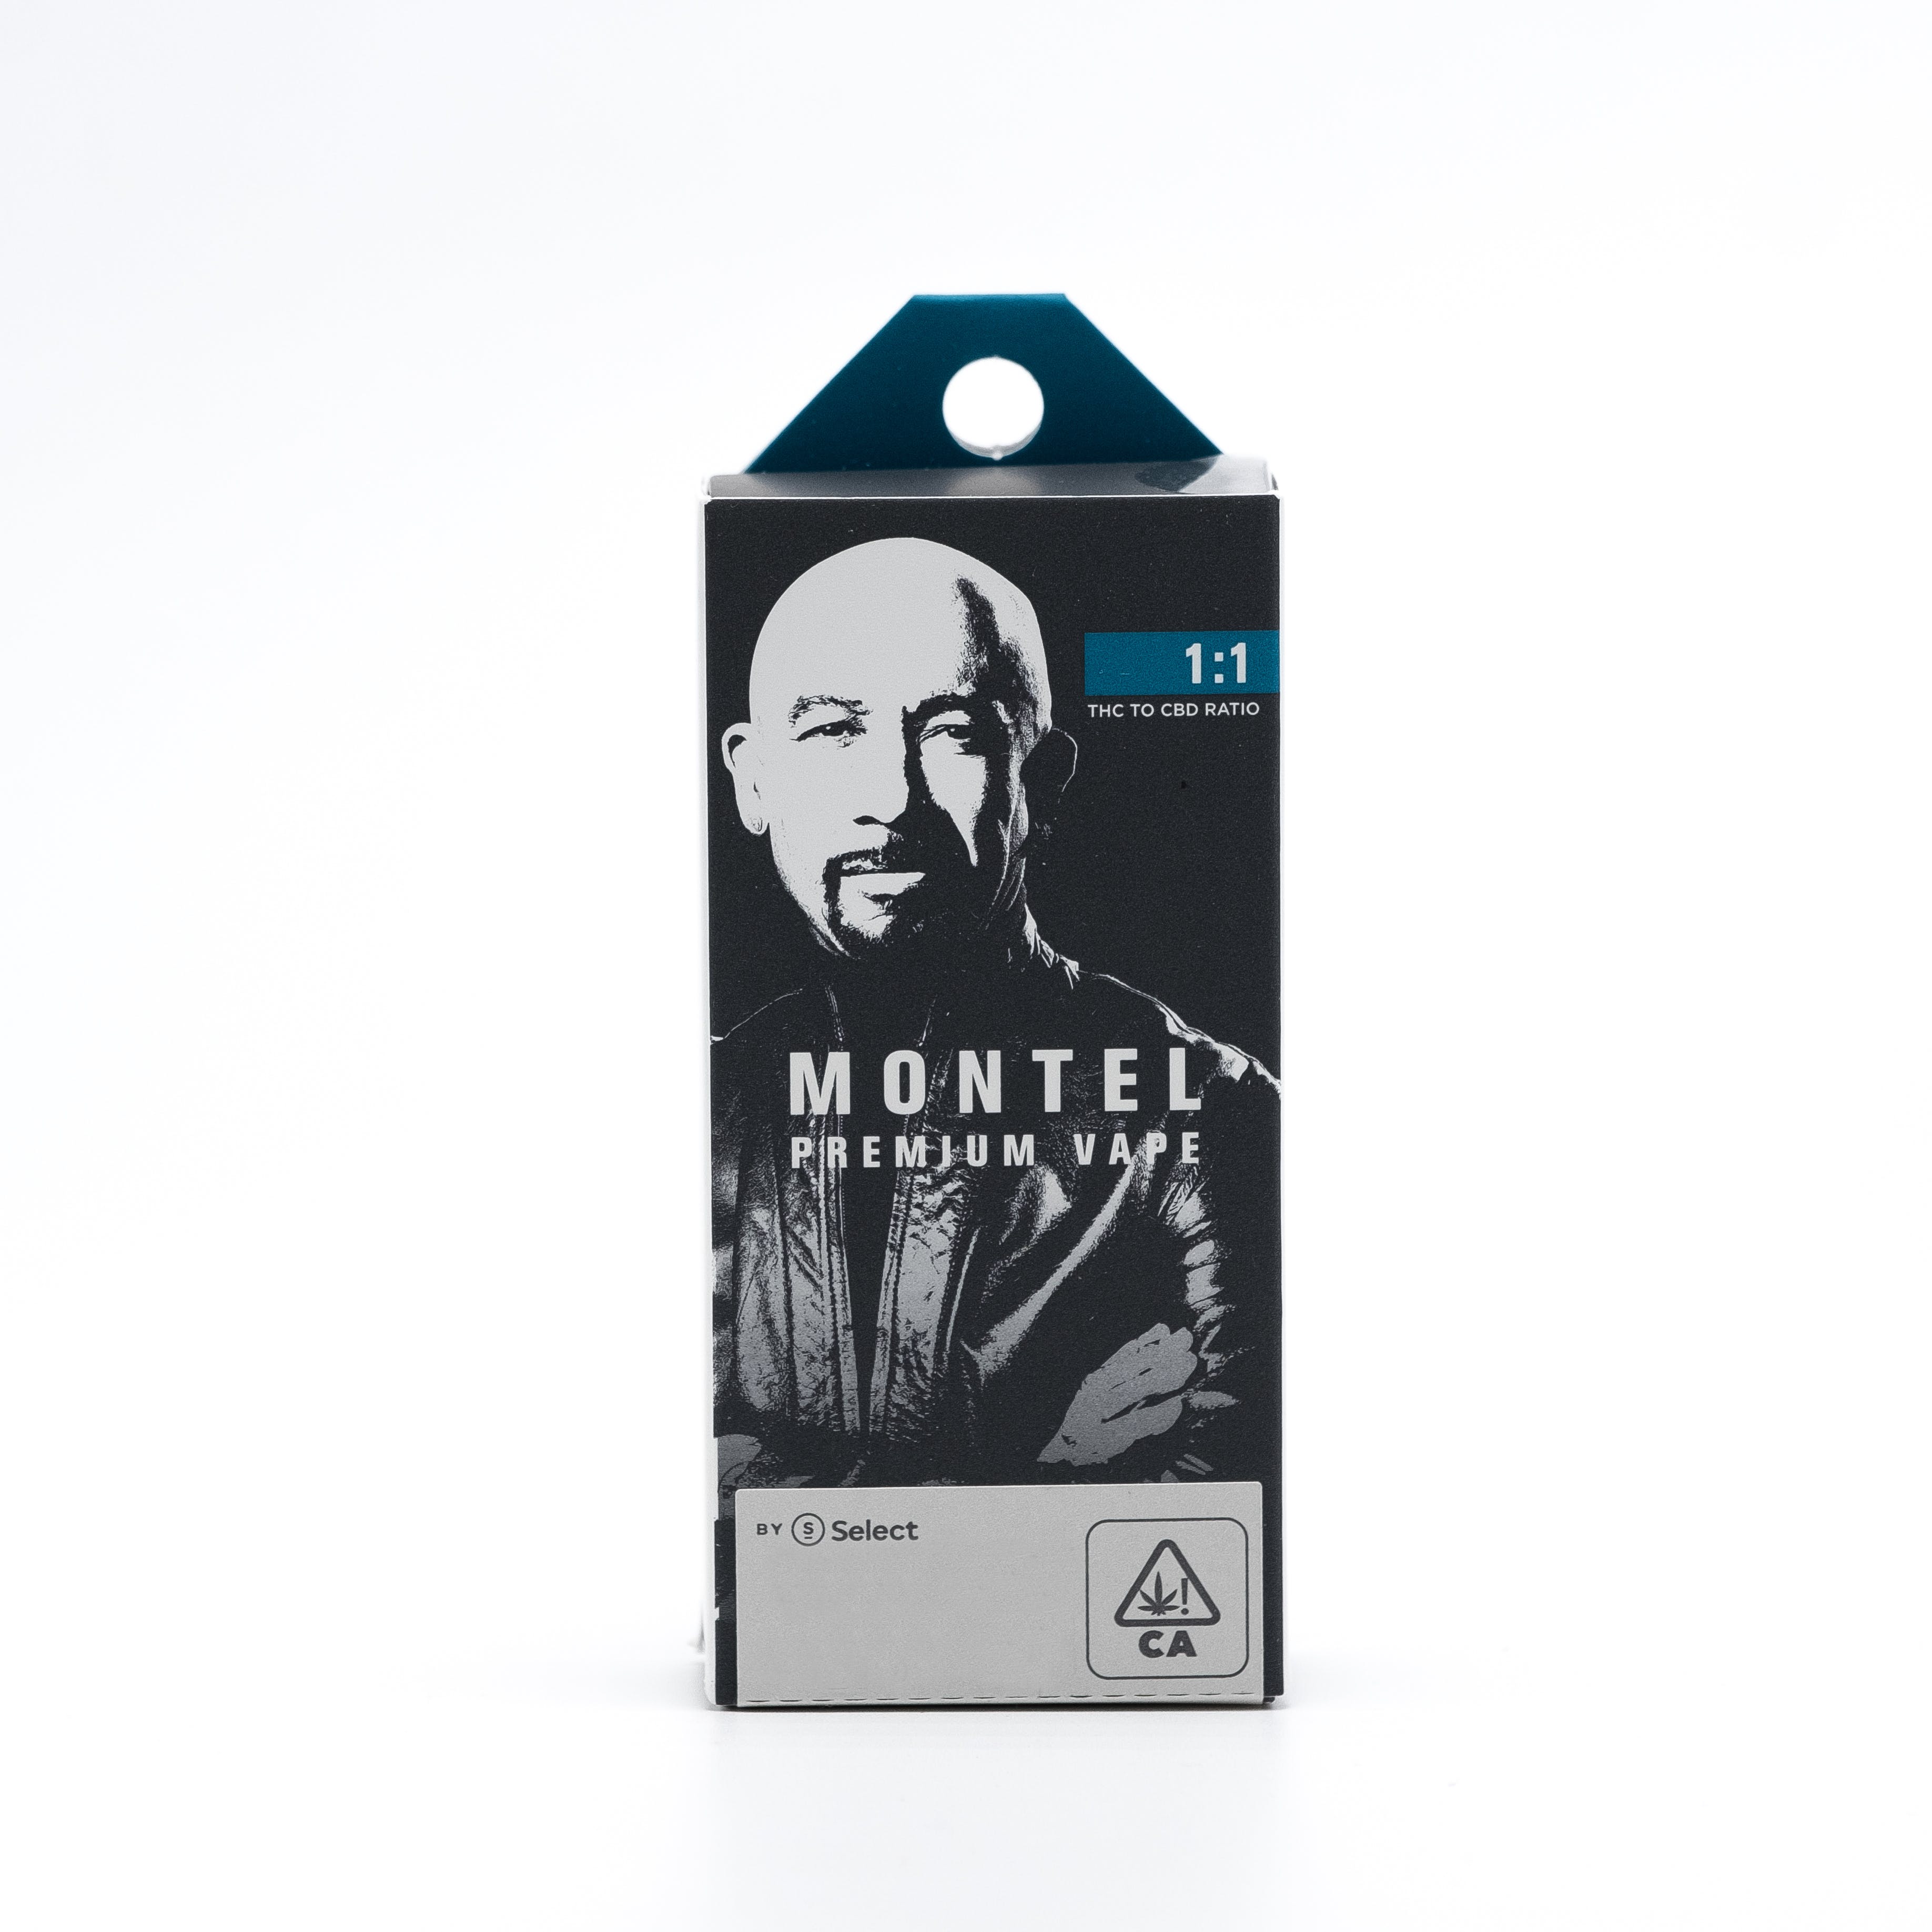 1:1 Montel Cartridge (1g)